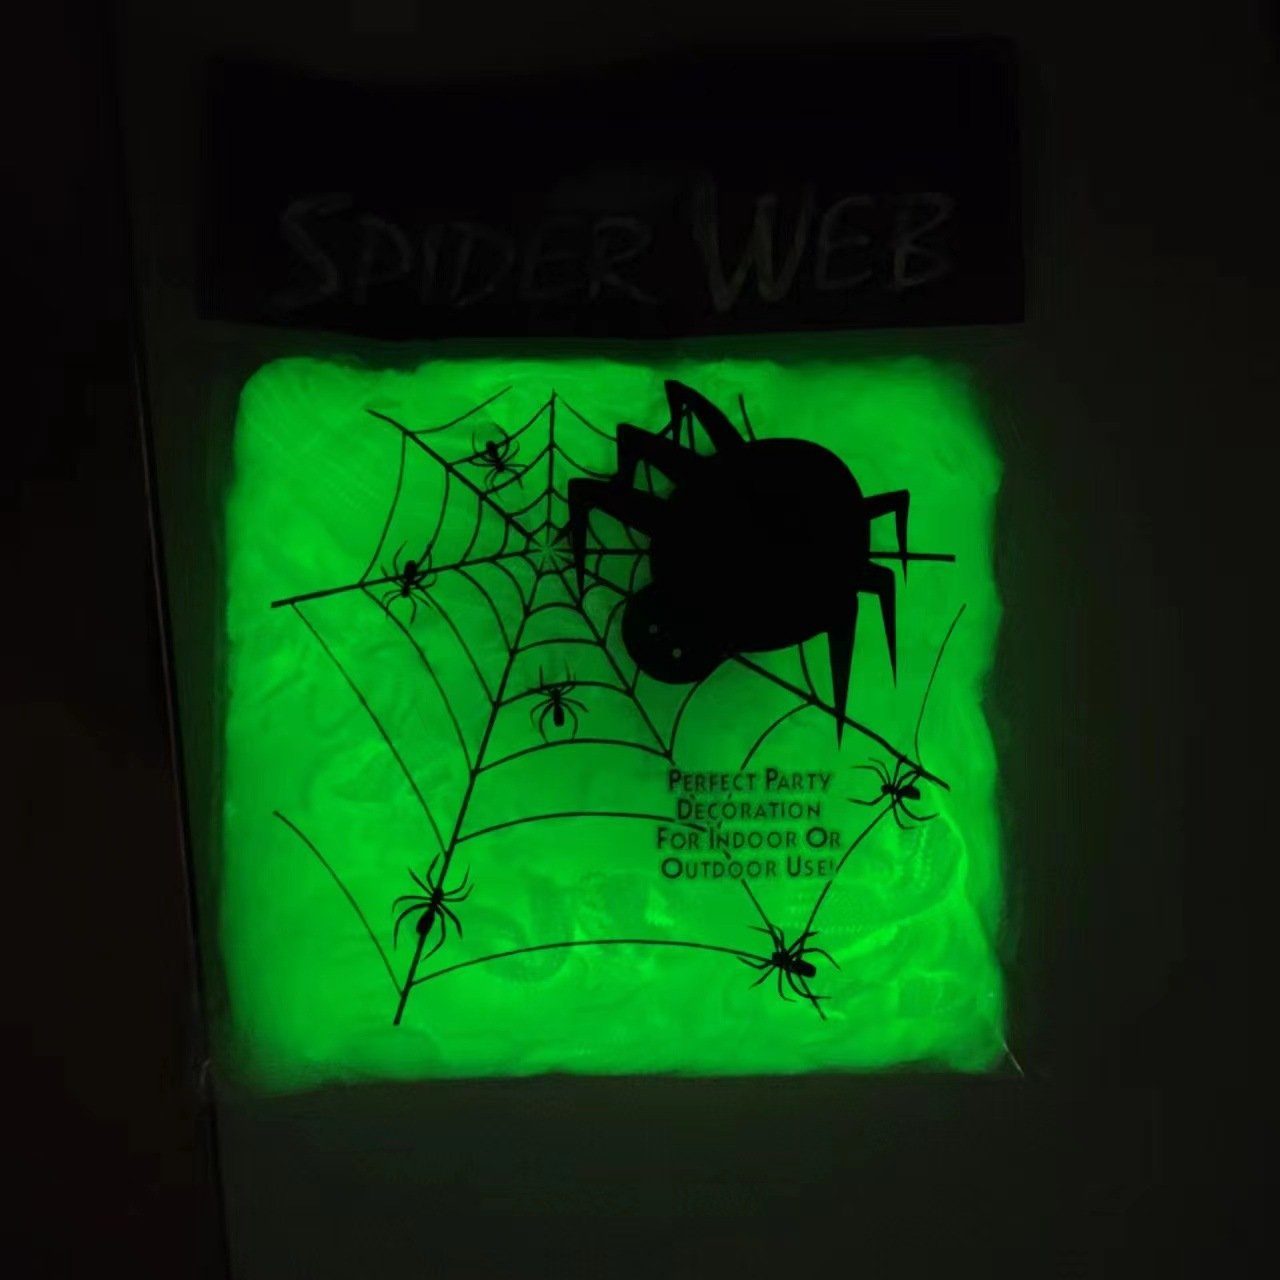 Hängedekoration Spinnennetz + leuchtend Spinnen PRECORN Halloween 20 Party Fasching Deko